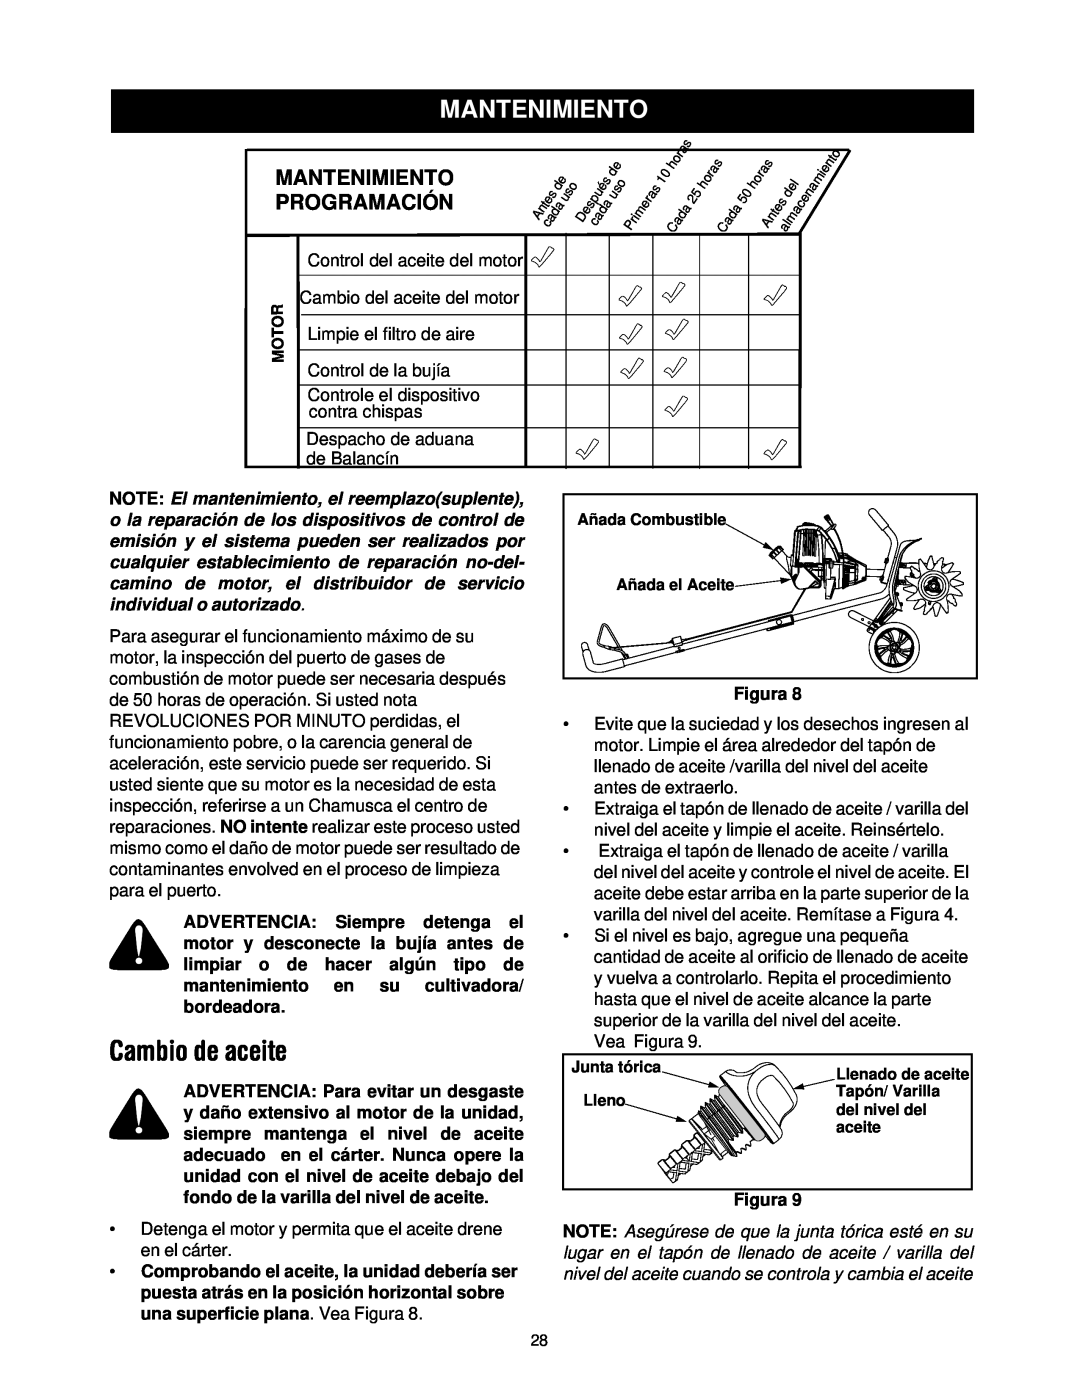 Craftsman 316.2927 manual Cambio de aceite, Mantenimiento, Programación, Figura 